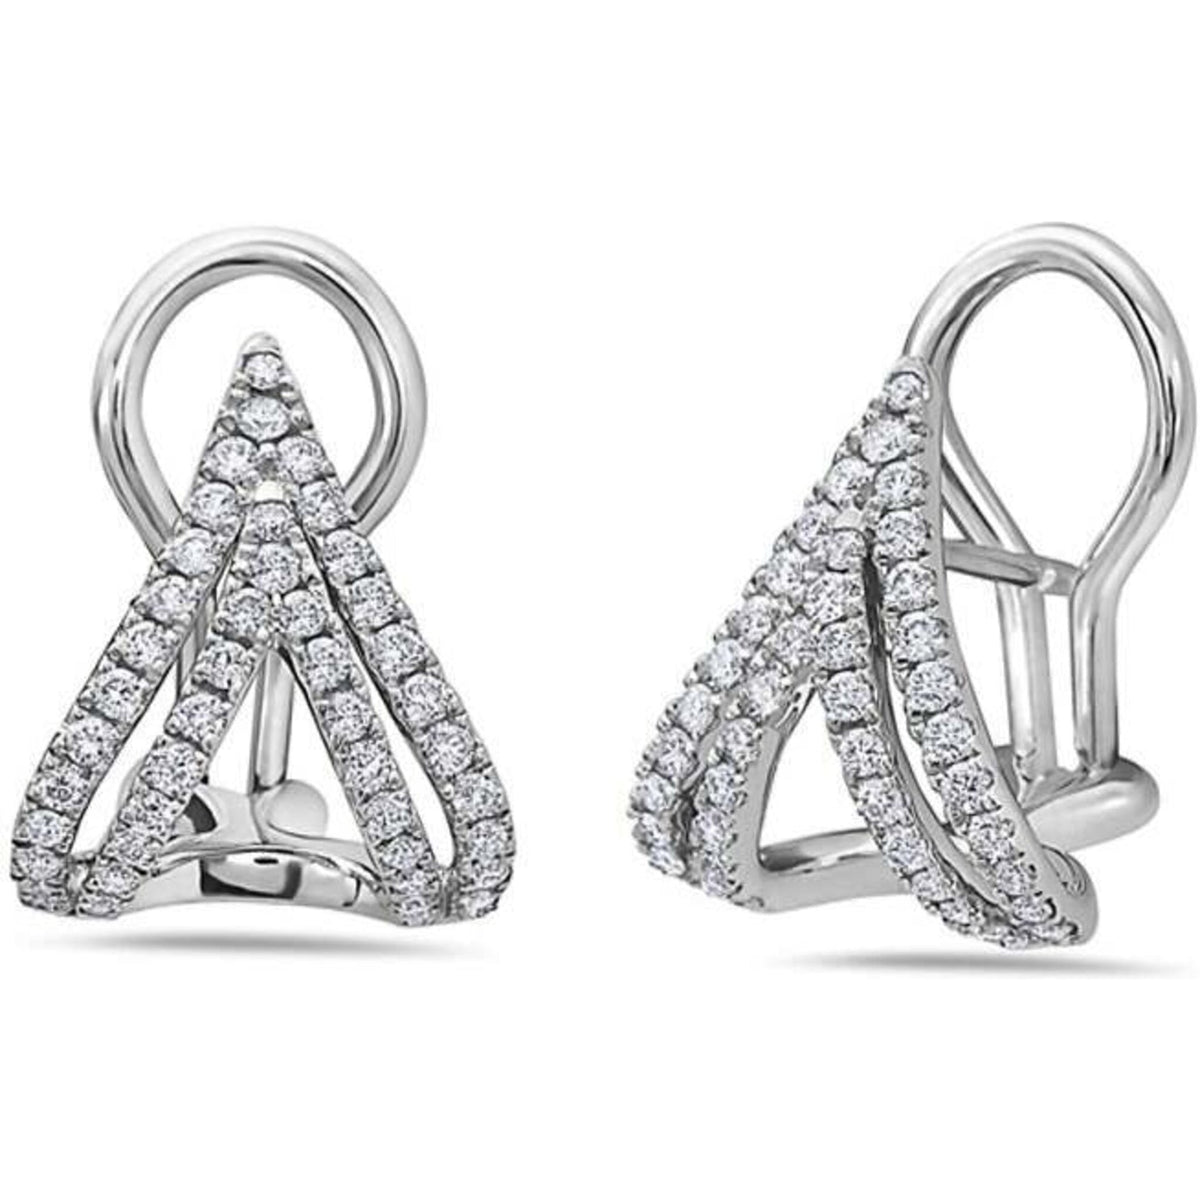 Elegant diamond stud earrings by Charles Krypell